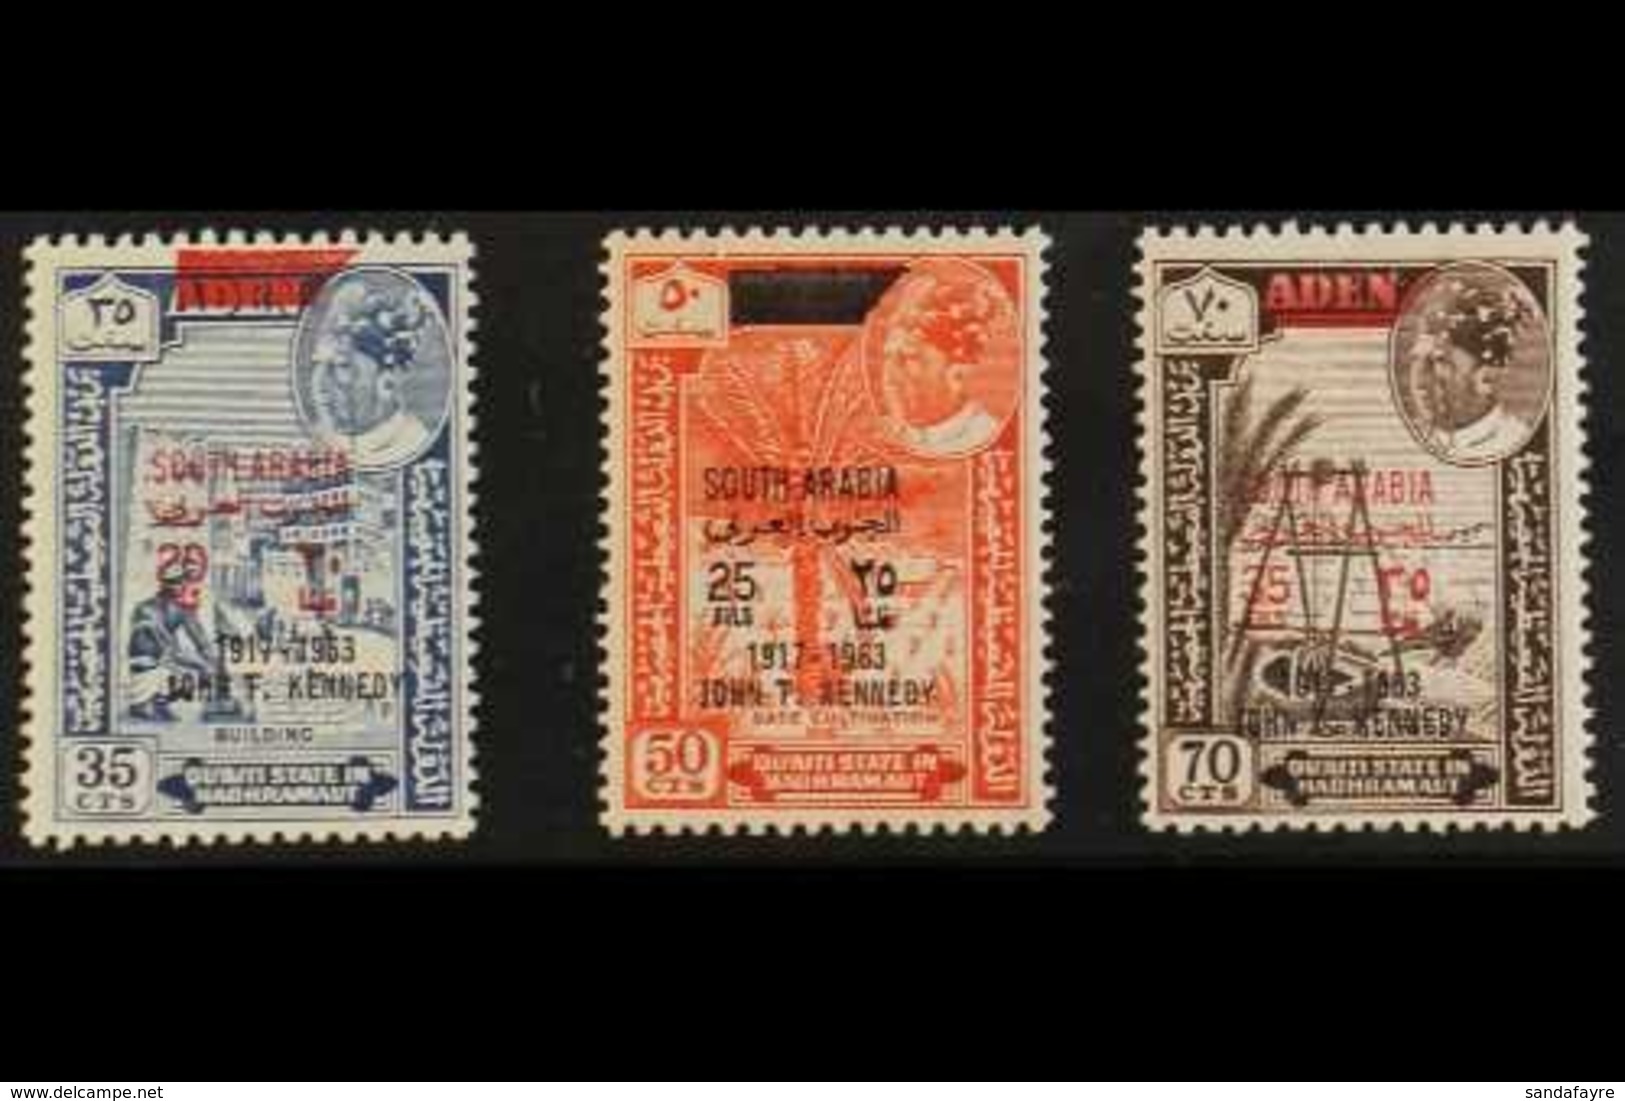 QU'AITI STATE 1966 Kennedy OVERPRINTS IN BLACK Complete Set (SG 68/70 Var, Michel 68/70 Var), Superb Never Hinged Mint,  - Aden (1854-1963)